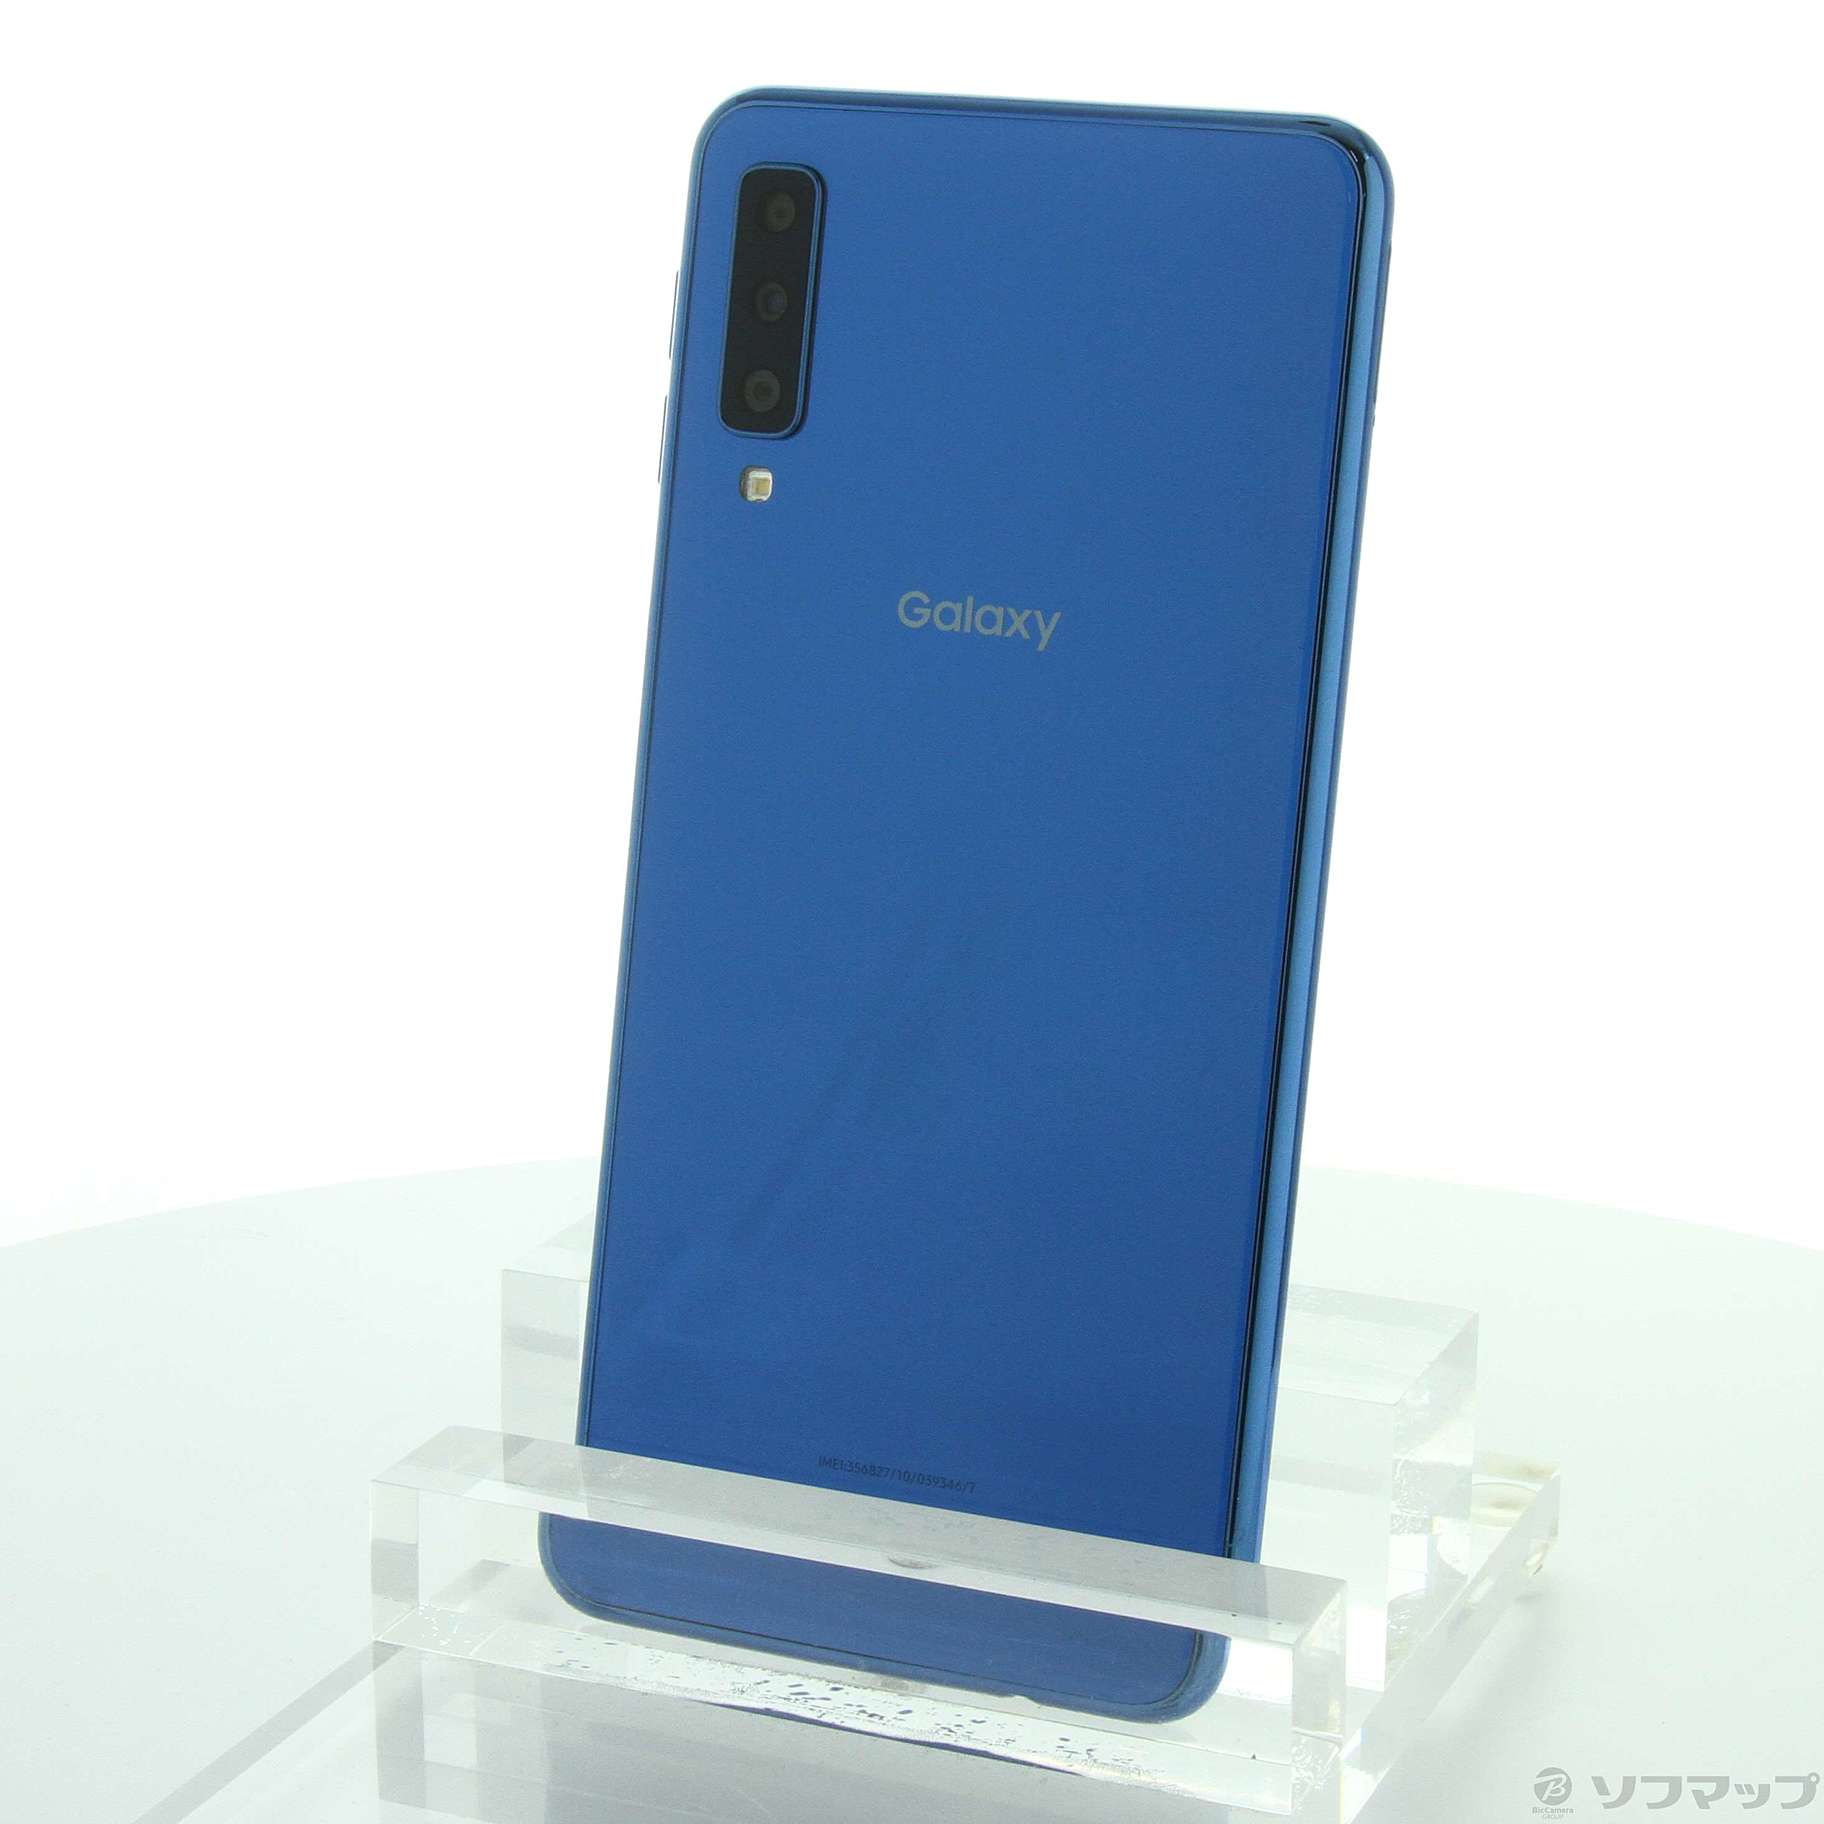 Garaxy A7 64GB SIMフリー/ブルー非対応NFC対応